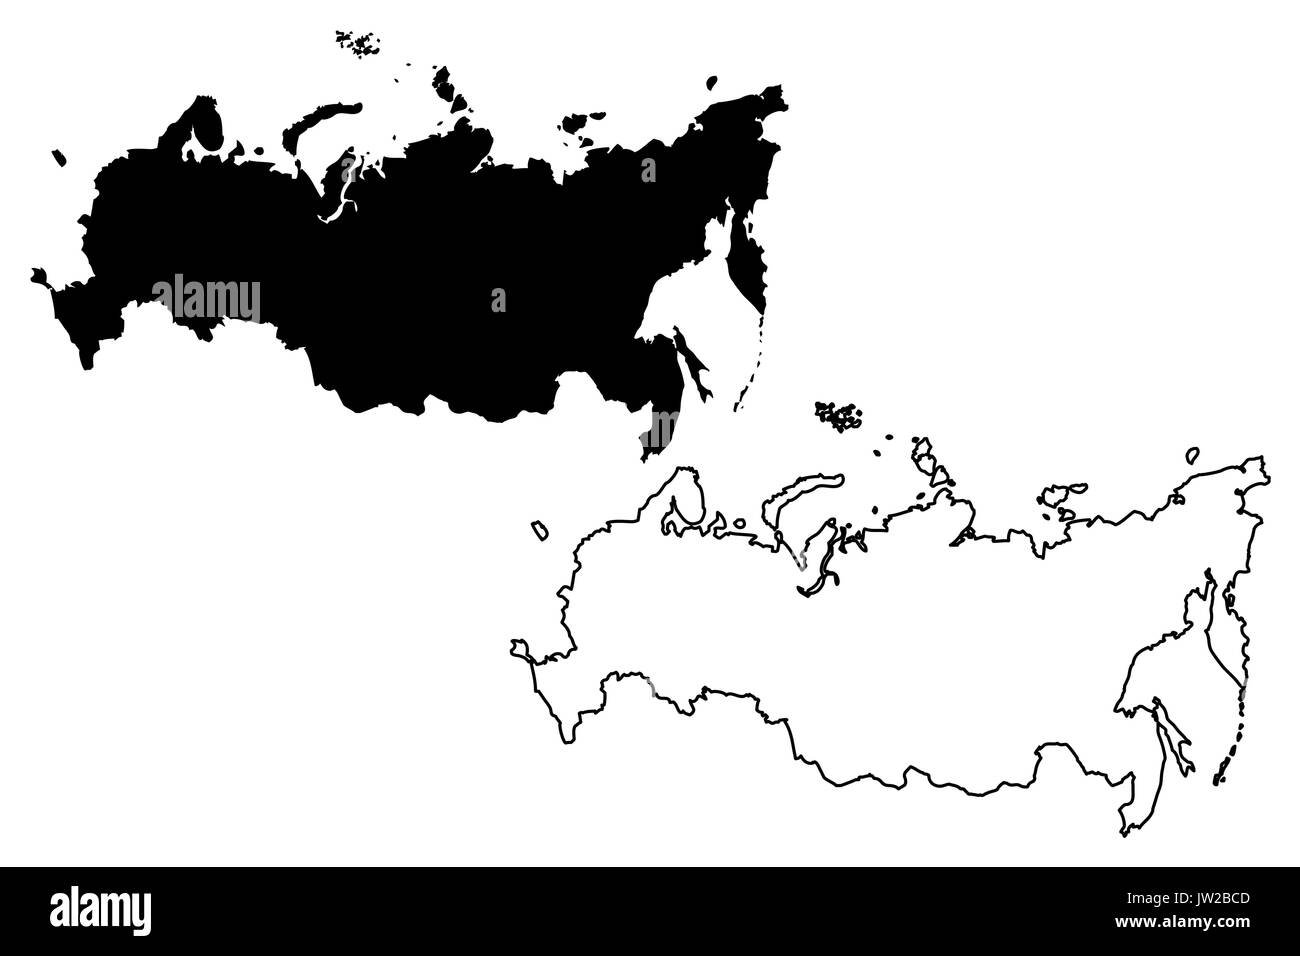 Карта россии чб контур